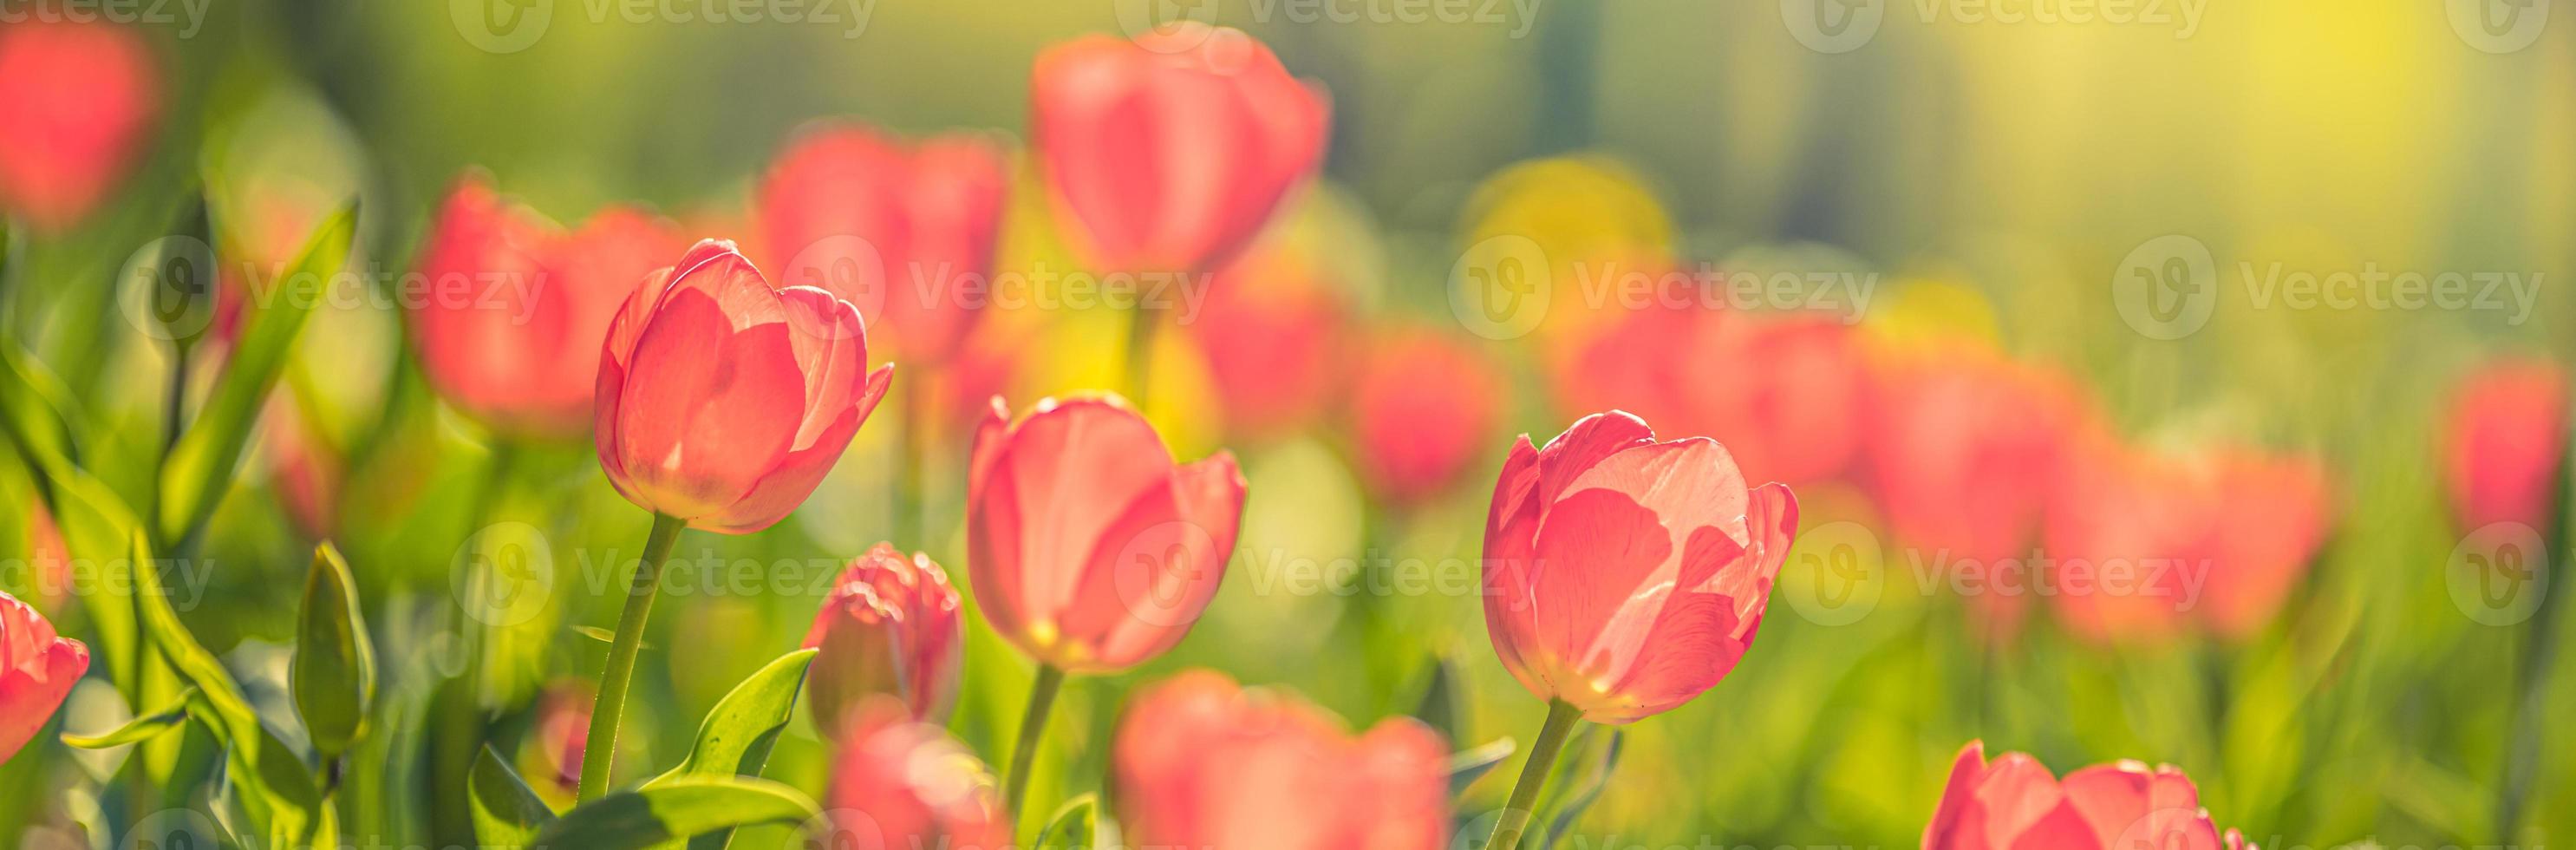 vue rapprochée sur la nature d'étonnantes tulipes roses rouges qui fleurissent dans le jardin. fleurs de printemps sous la lumière du soleil. paysage naturel de plantes à fleurs ensoleillées et feuillage romantique flou. bannière nature panoramique sereine photo